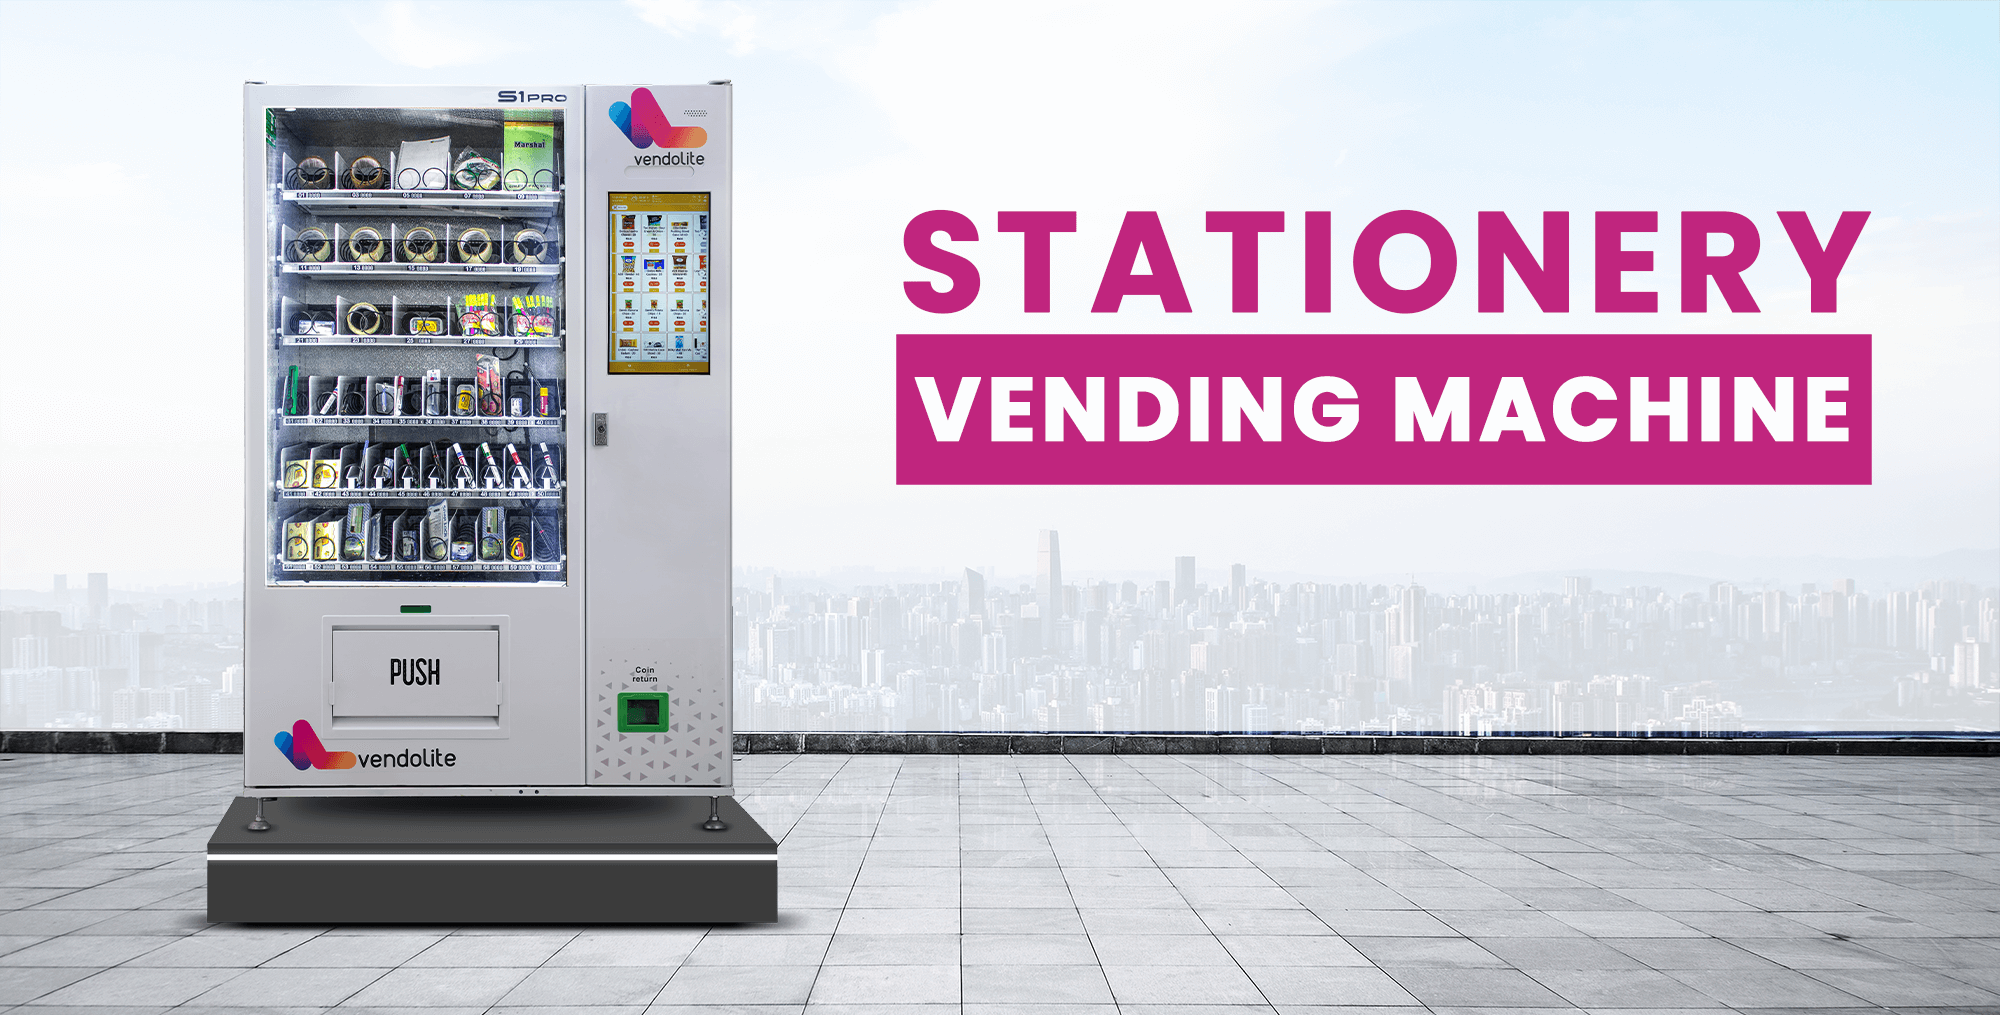 stationery vending machine heading image